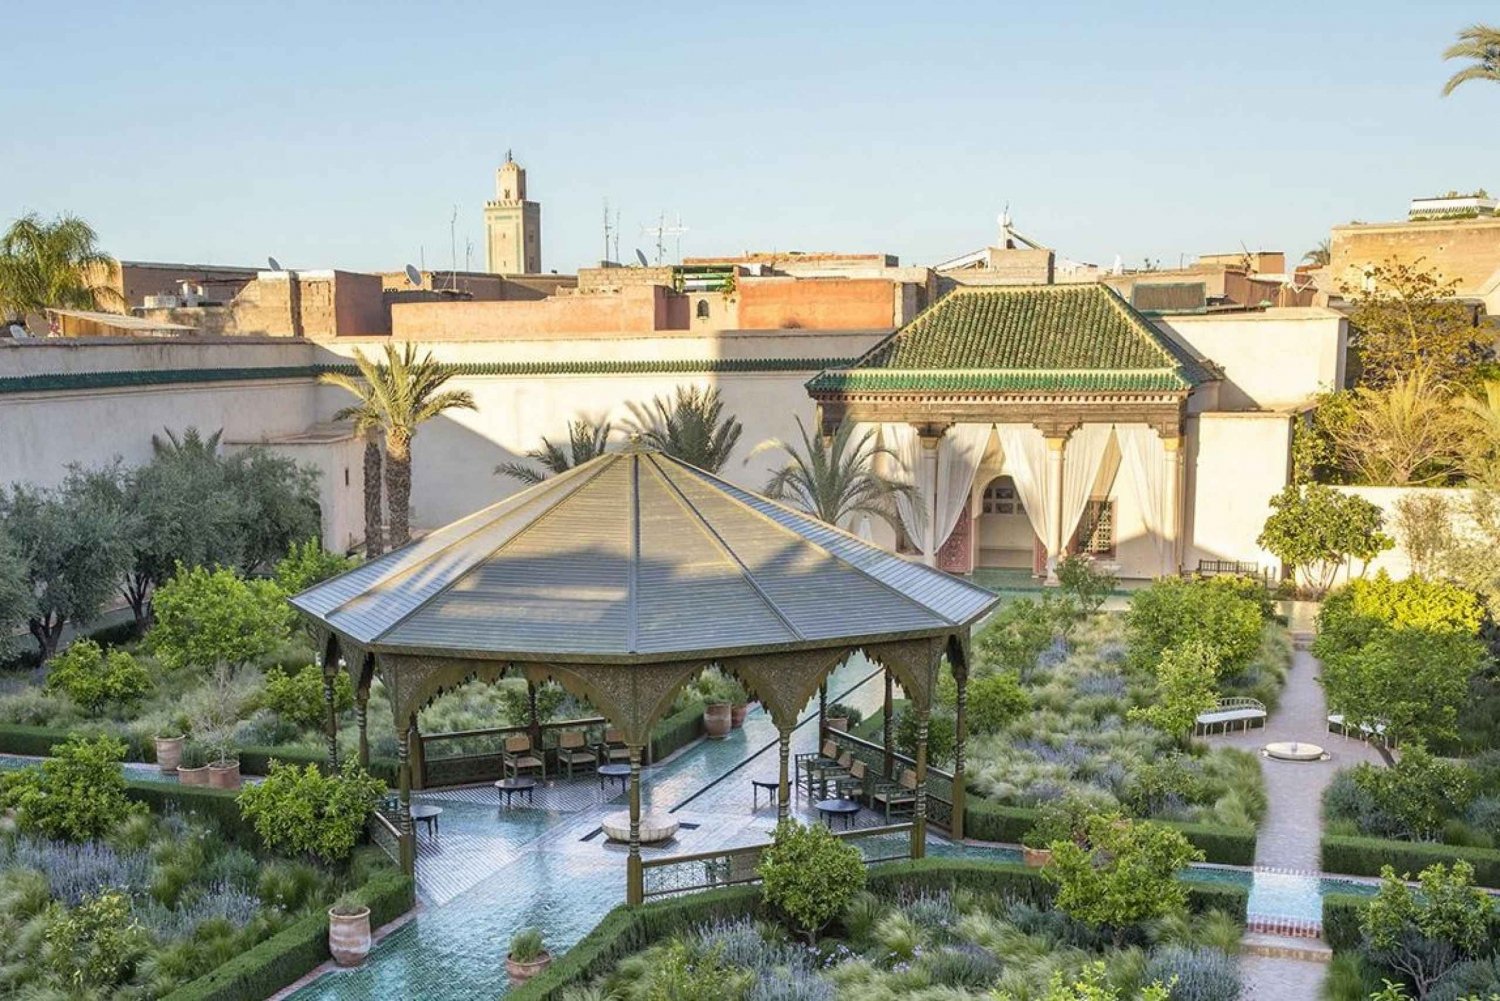 Marrakech: Ben Youssef Madrasa, Geheimer Garten & Medina Tour